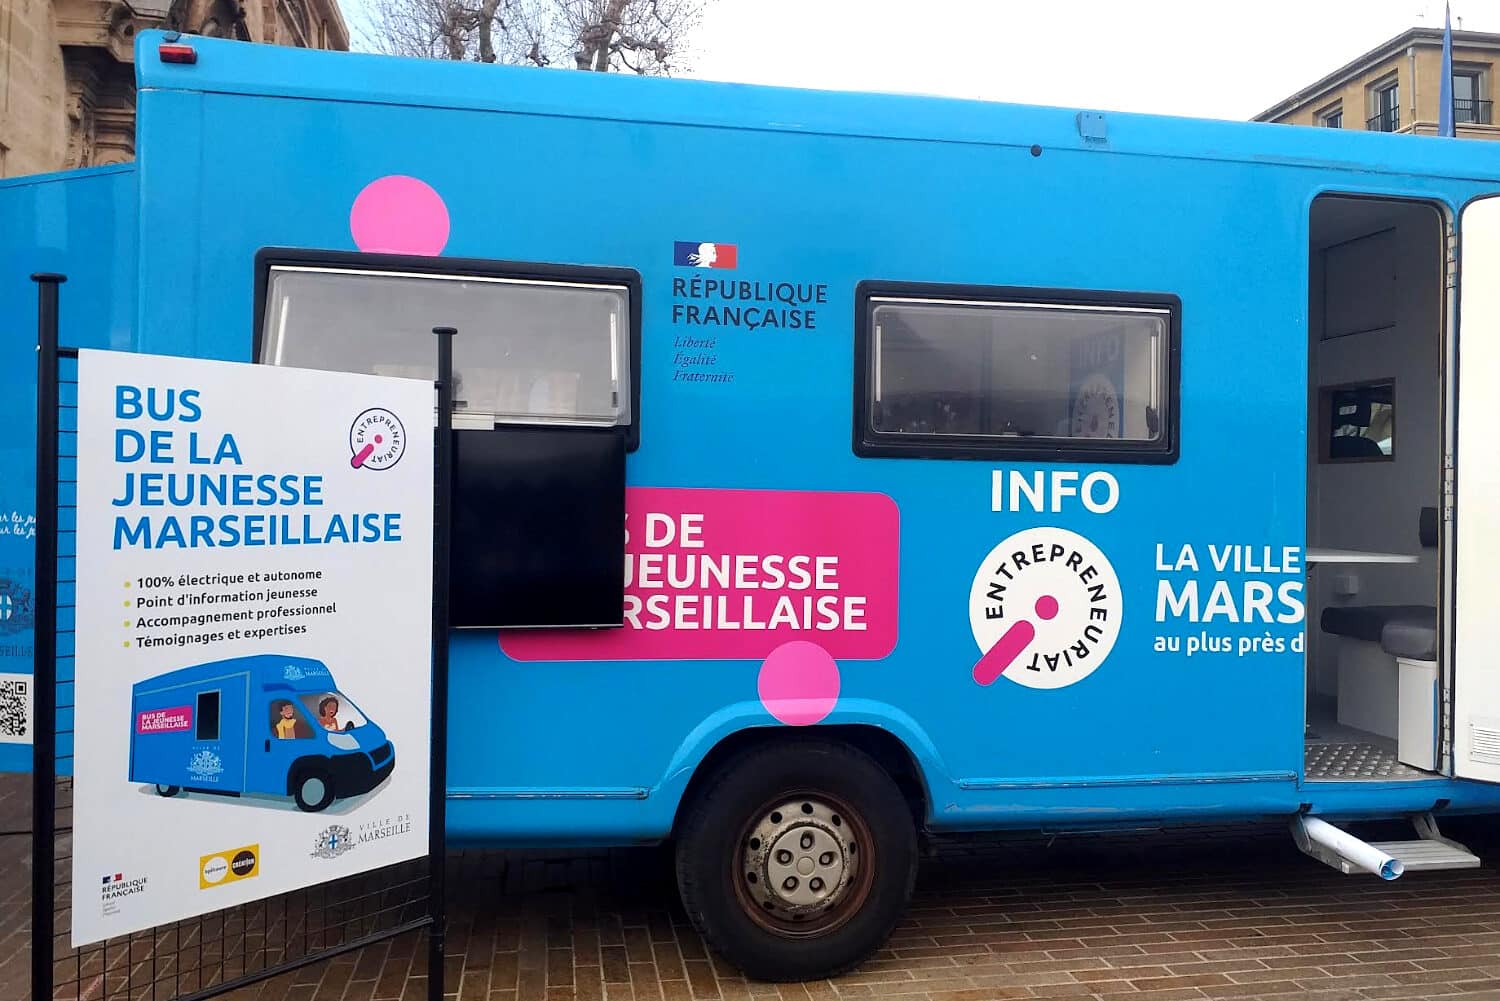 bus, Le « Bus de l&rsquo;entrepreneuriat » roule pour l&rsquo;insertion des jeunes Marseillais, Made in Marseille